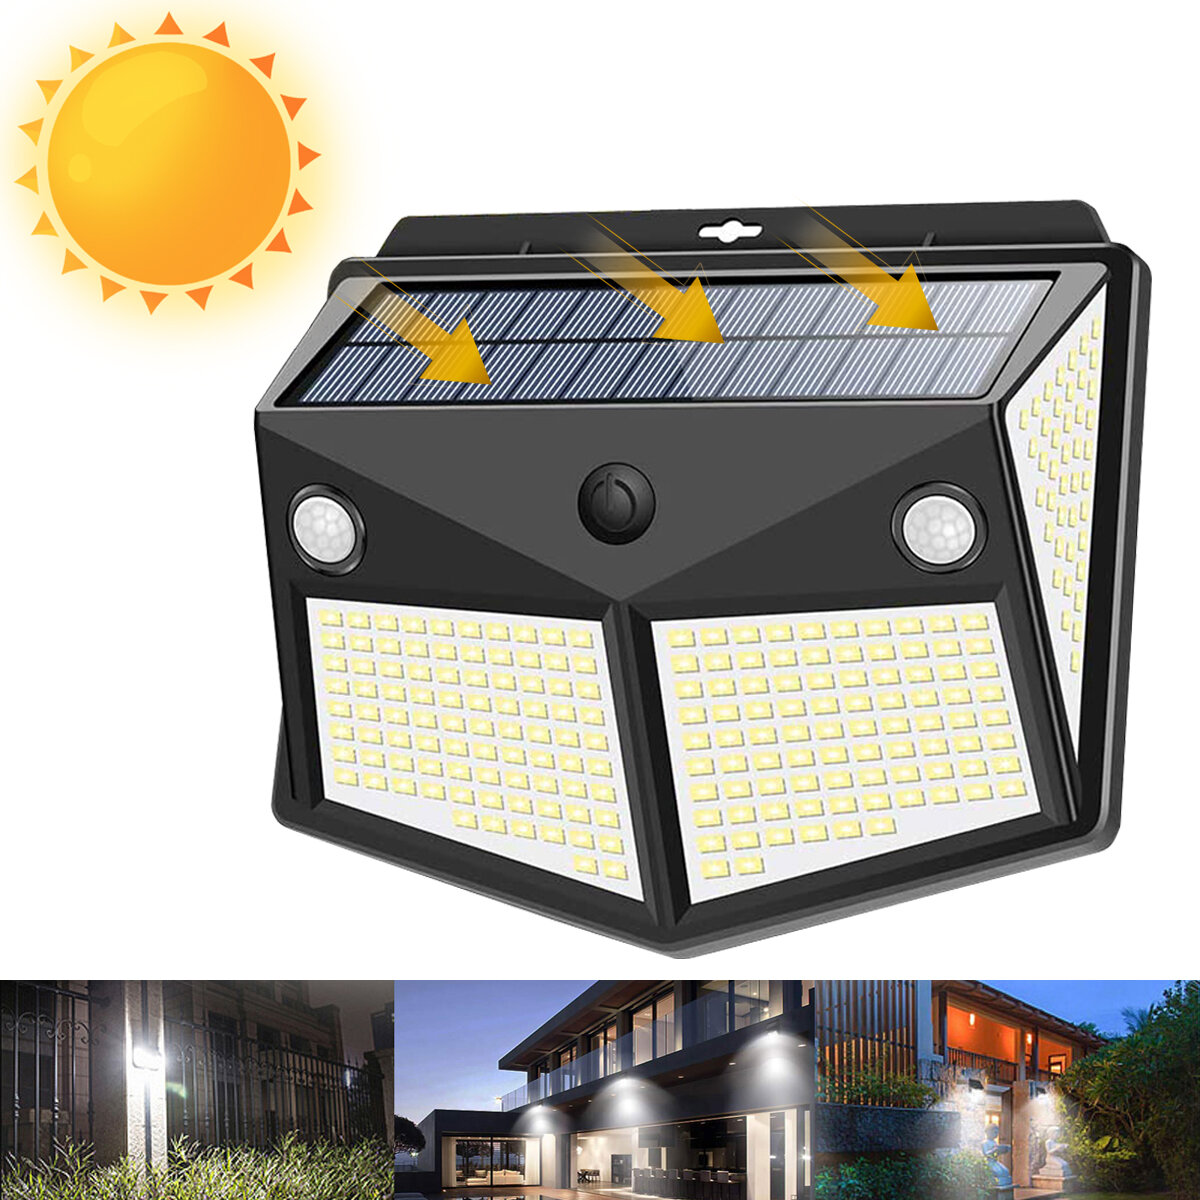 Solarbetriebene 206 LED PIR Motion Sensor Wand Sicherheitsleuchte Garten Außenl